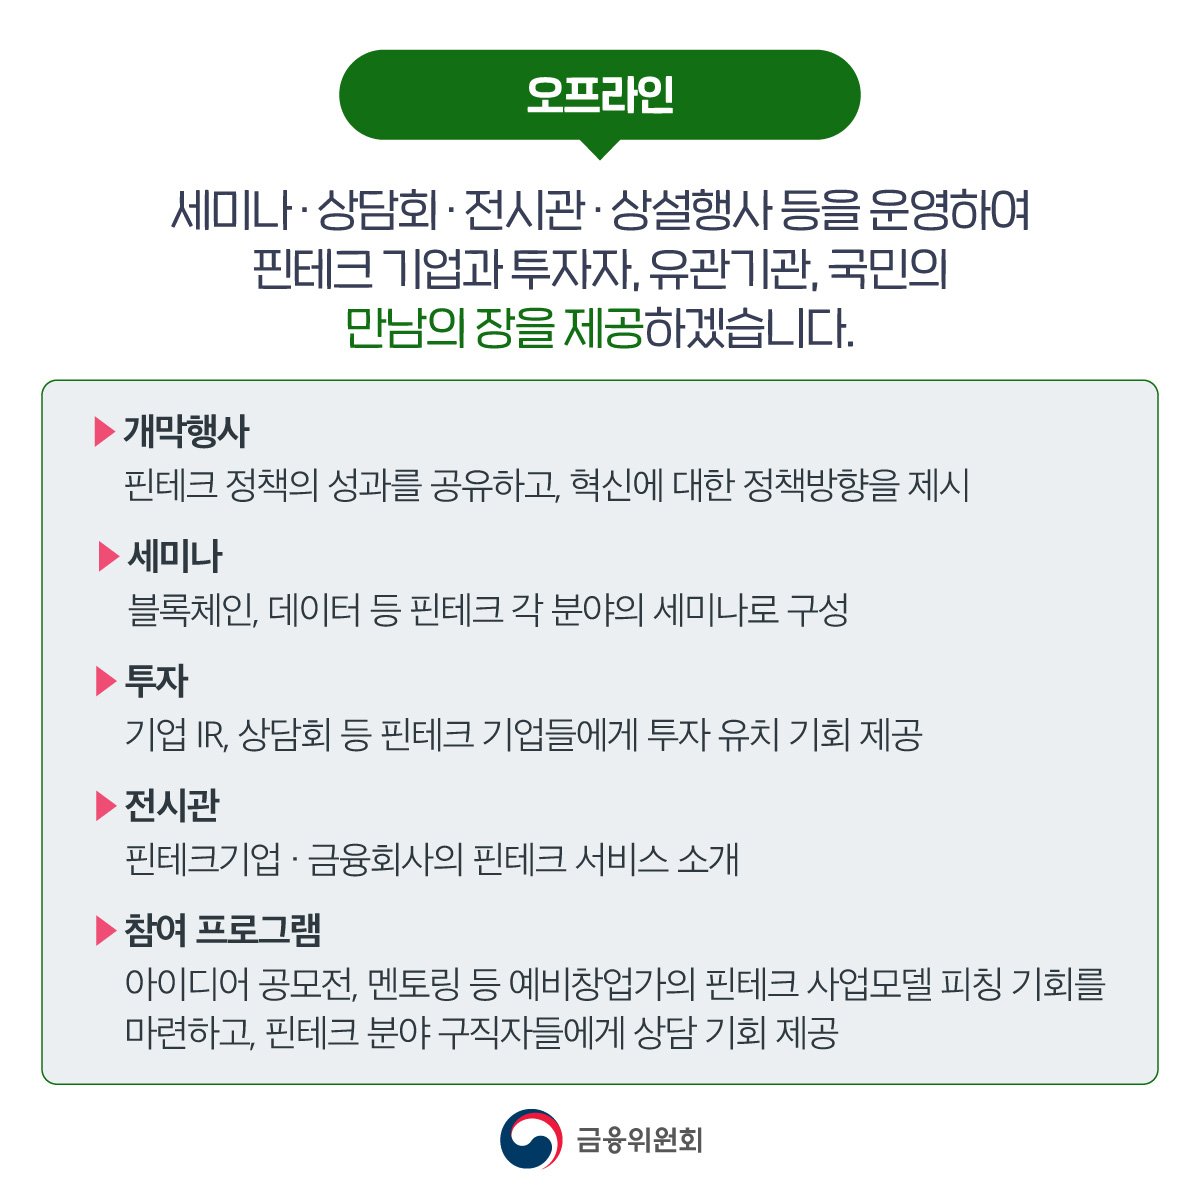 코리아 핀테크 위크 2022 개최